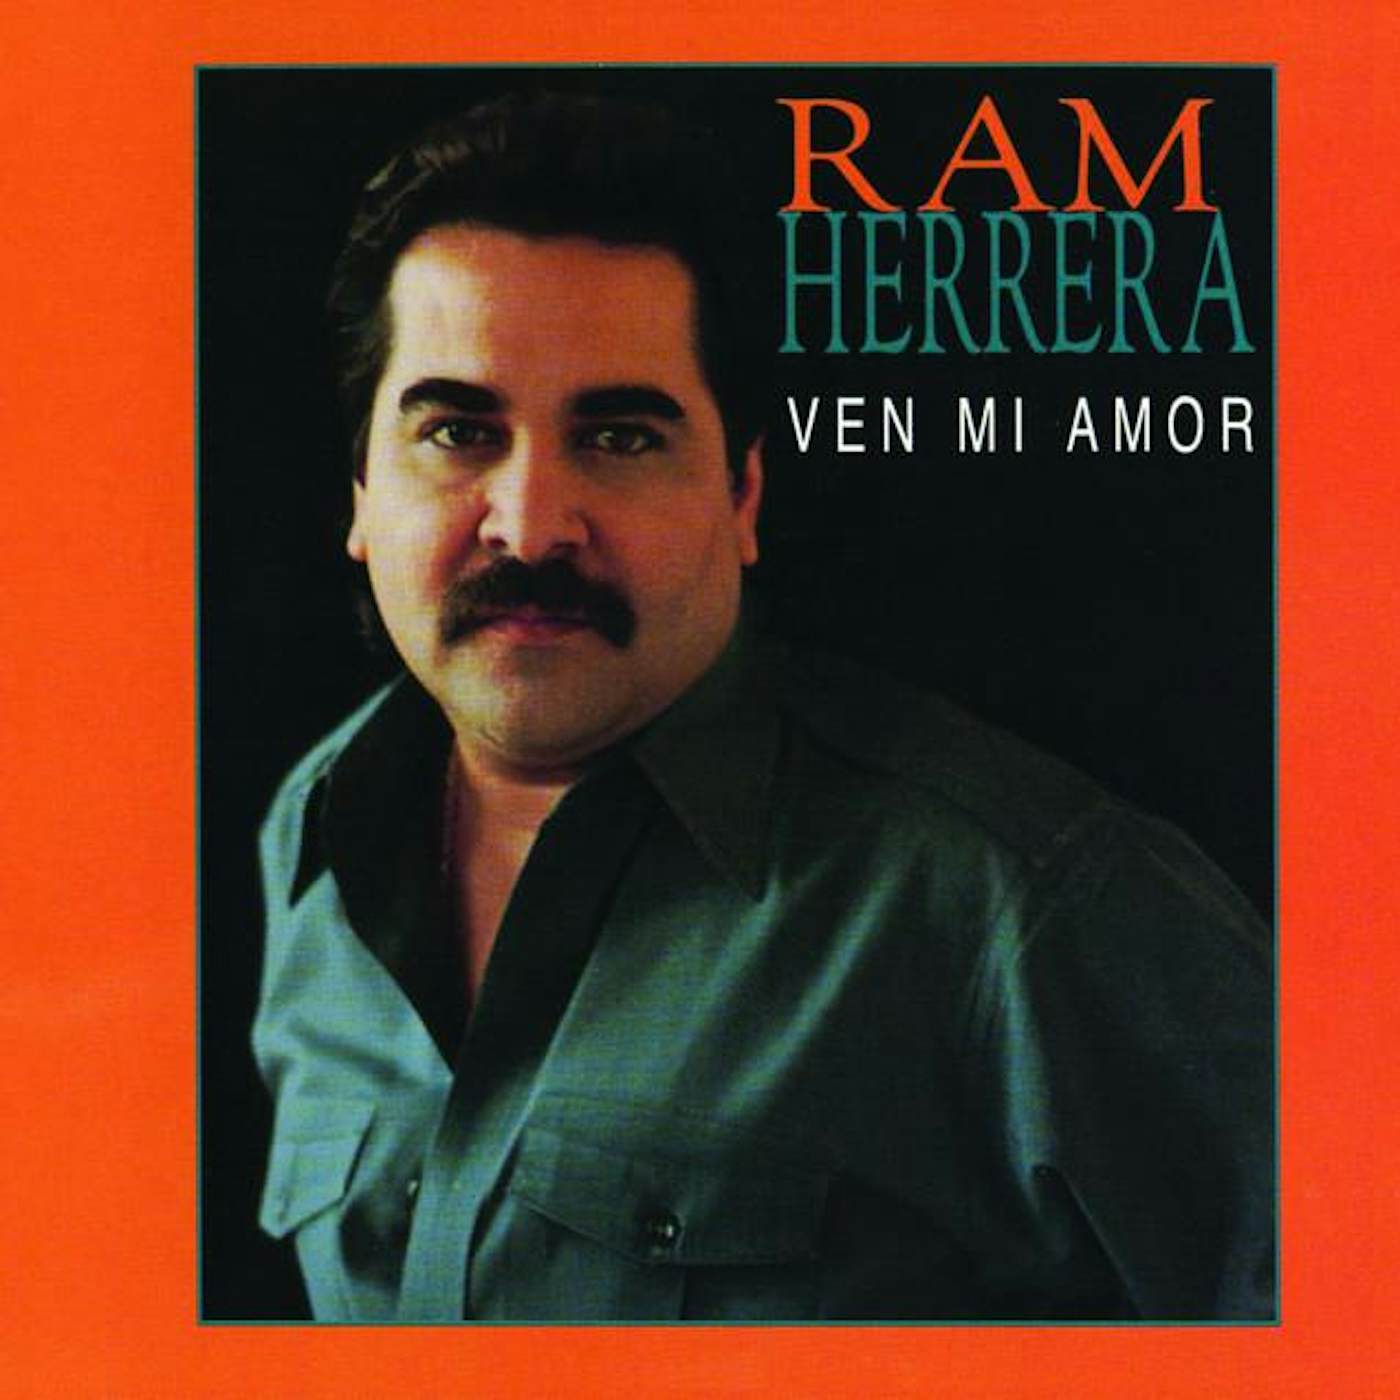 Ram Herrera